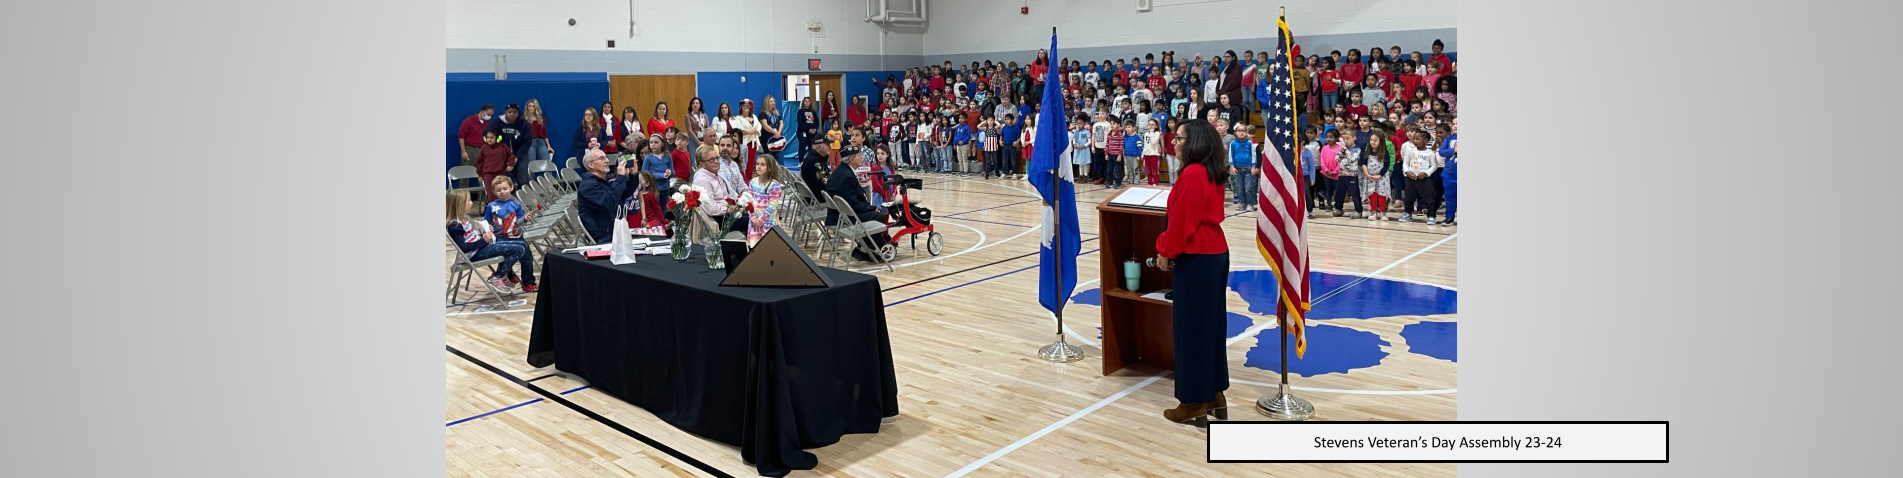 Stevens Veteran's Day Assembly 